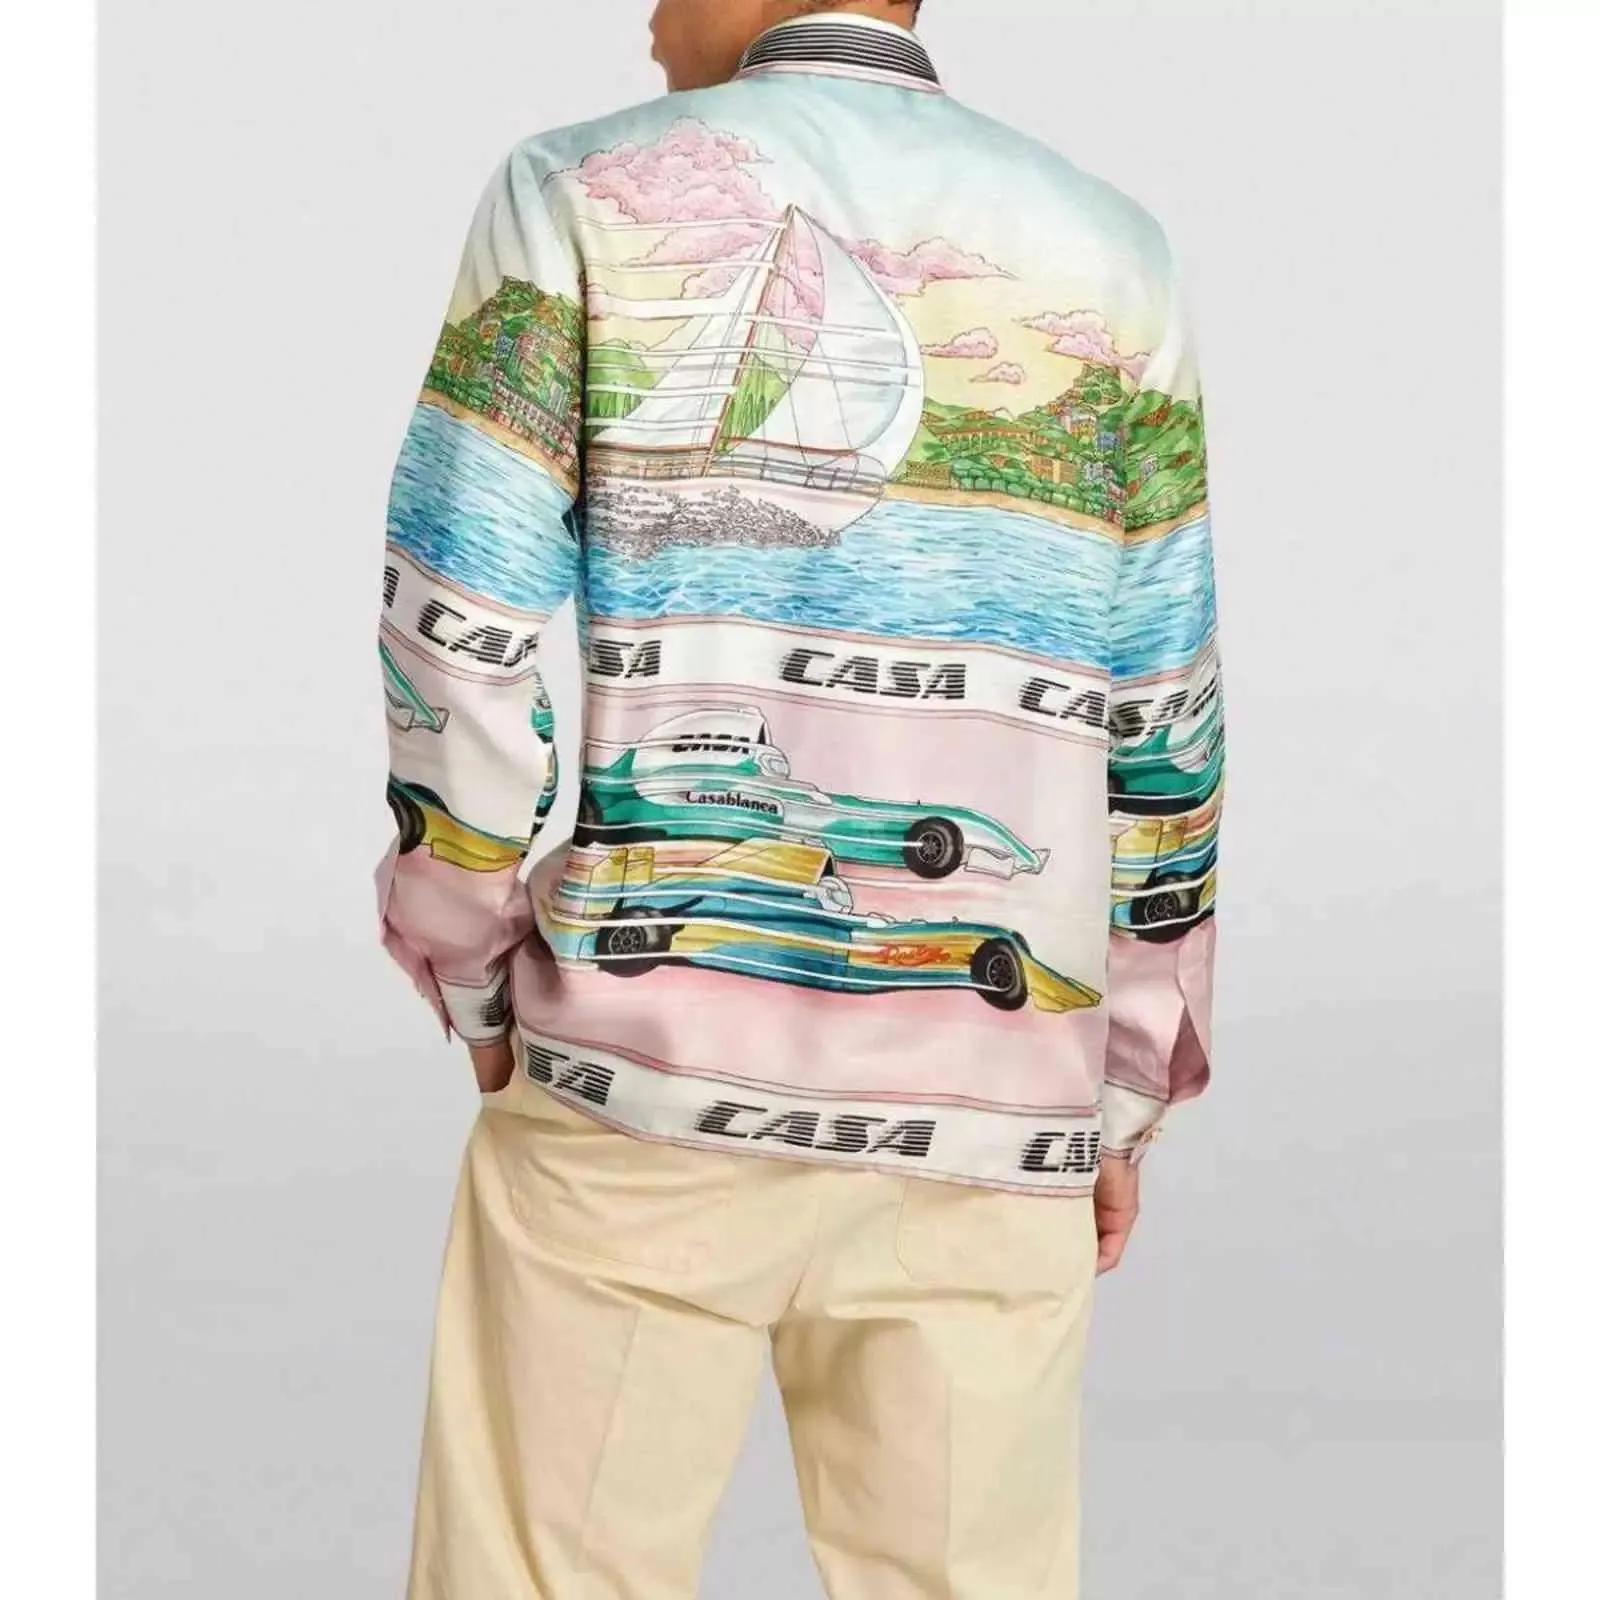 Maglietta da uomo firmata Moda Tiger Lettera Casablanca camicia da bowling in seta di lusso Pantaloncini casual da uomo Camicie da donna Abito manica corta slim fit M-3XL